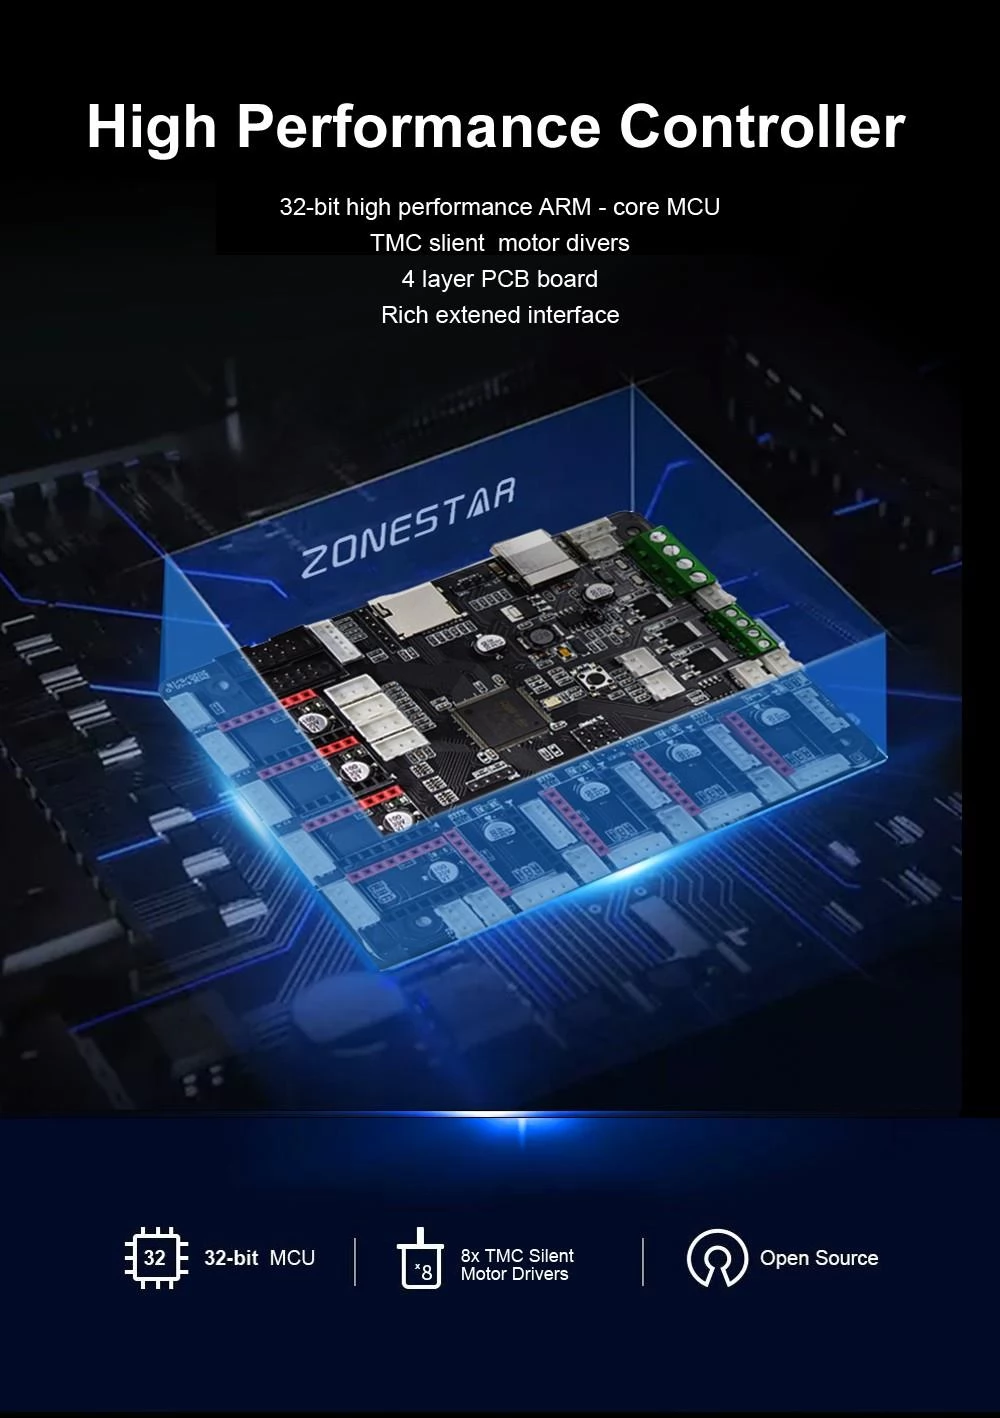 Zonestar Z9V5Pro-MK4 4 Extruders 3D Printer, Het automatische nivelleren, 300x300x400mm